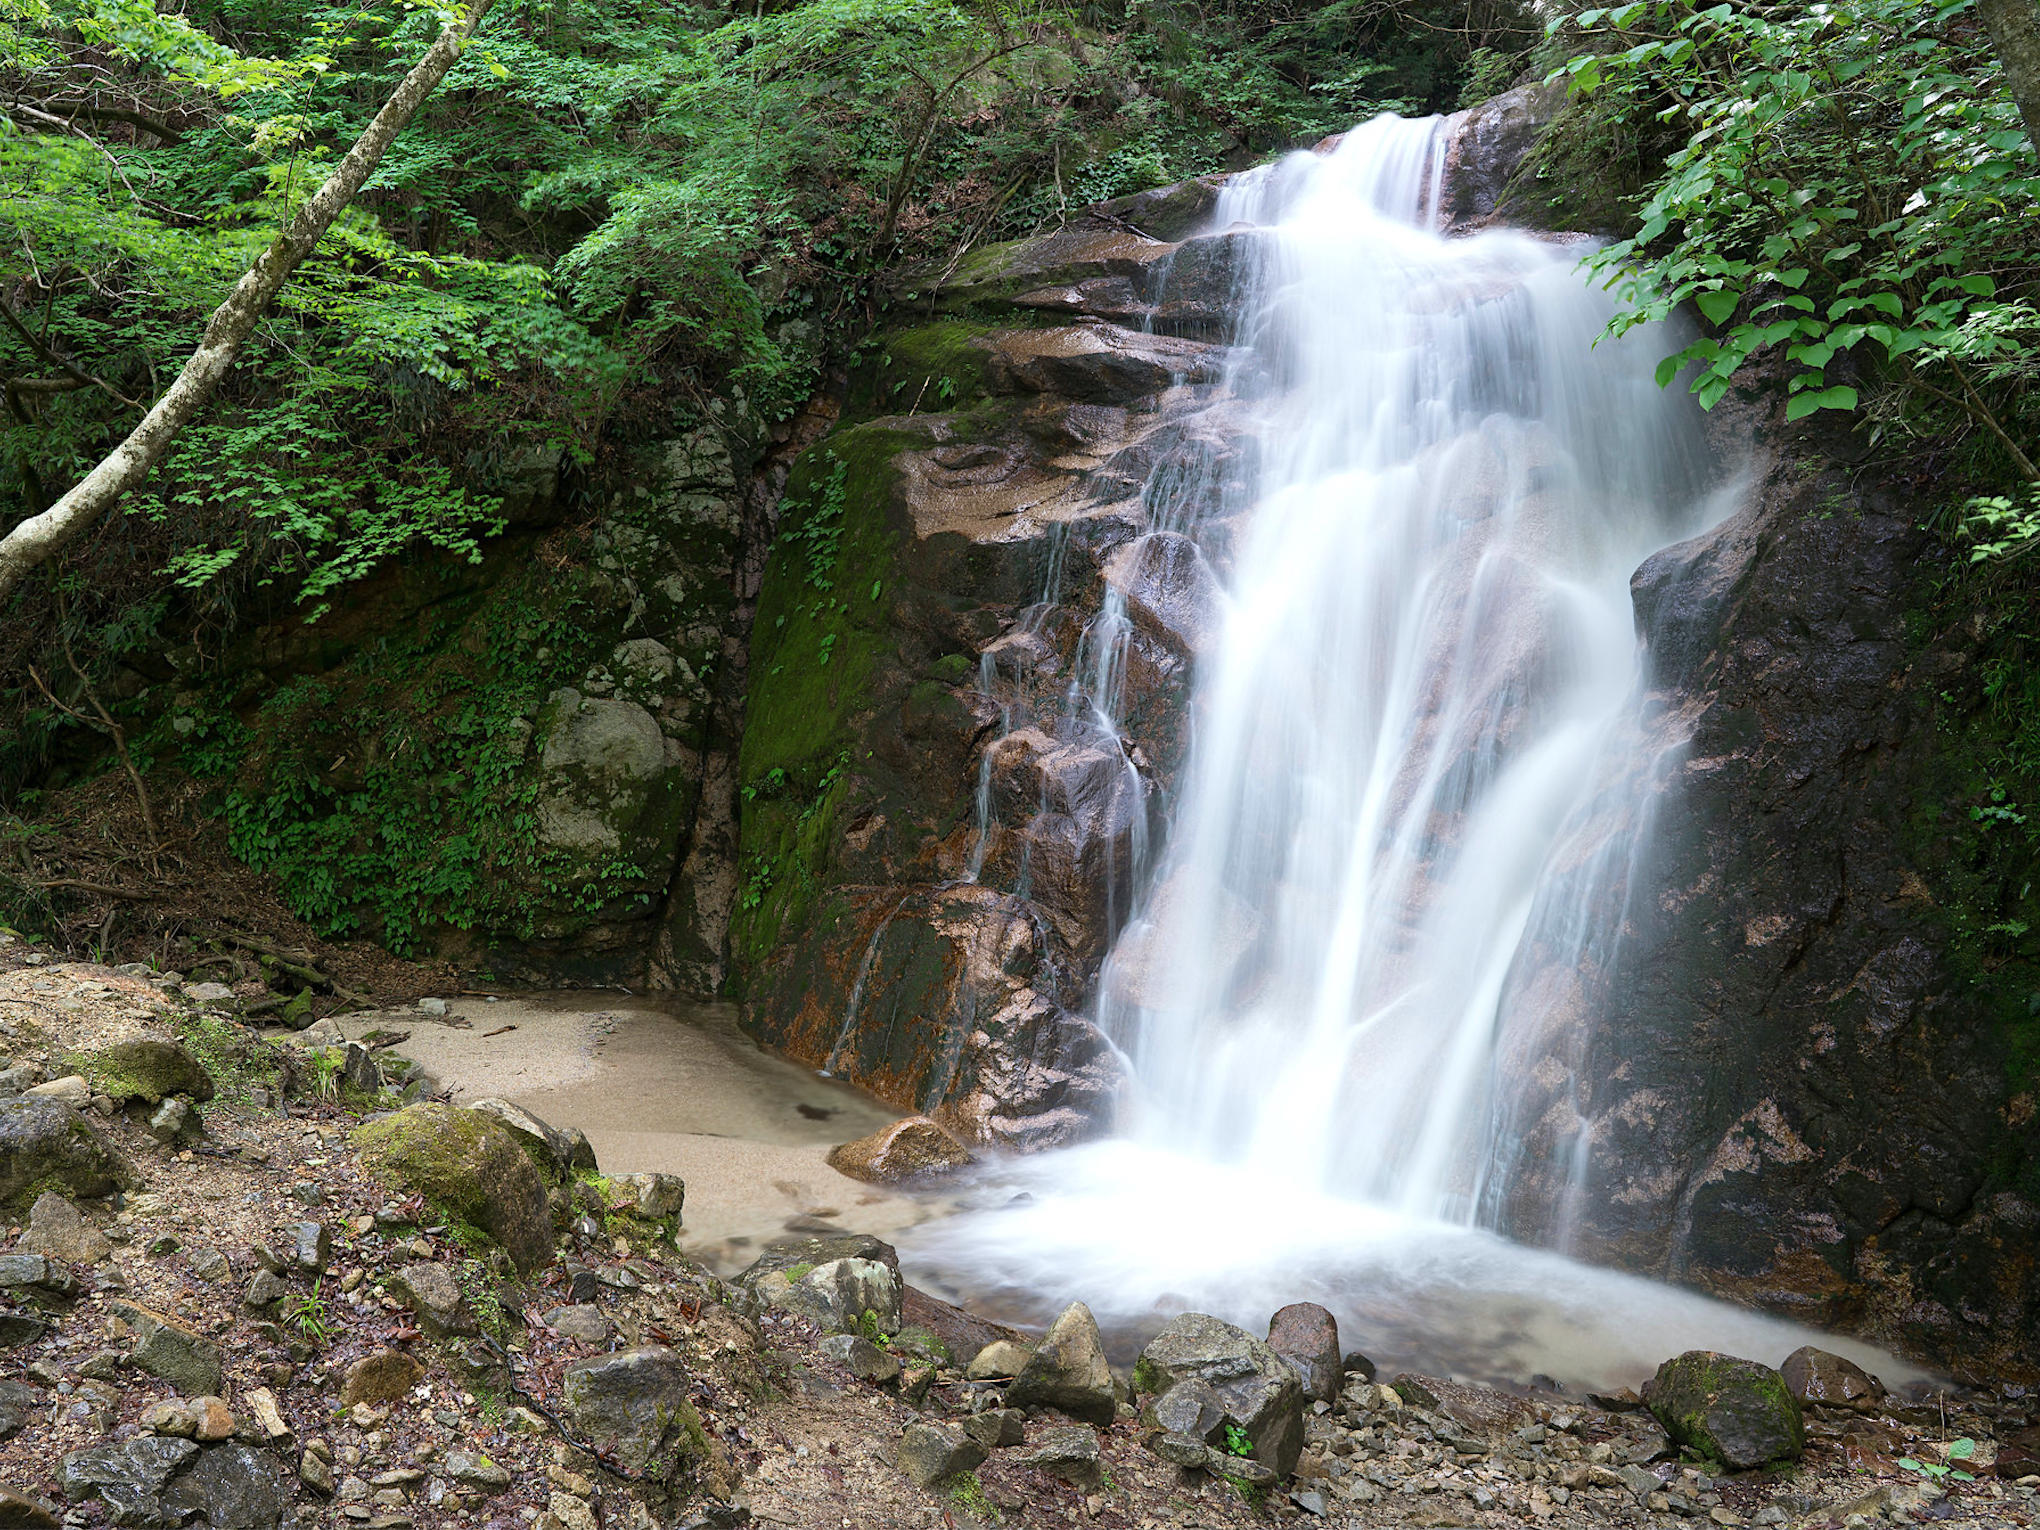 Explore Kiso Valley : Magome - Tsumago Mountain Trail Walk | tours ...